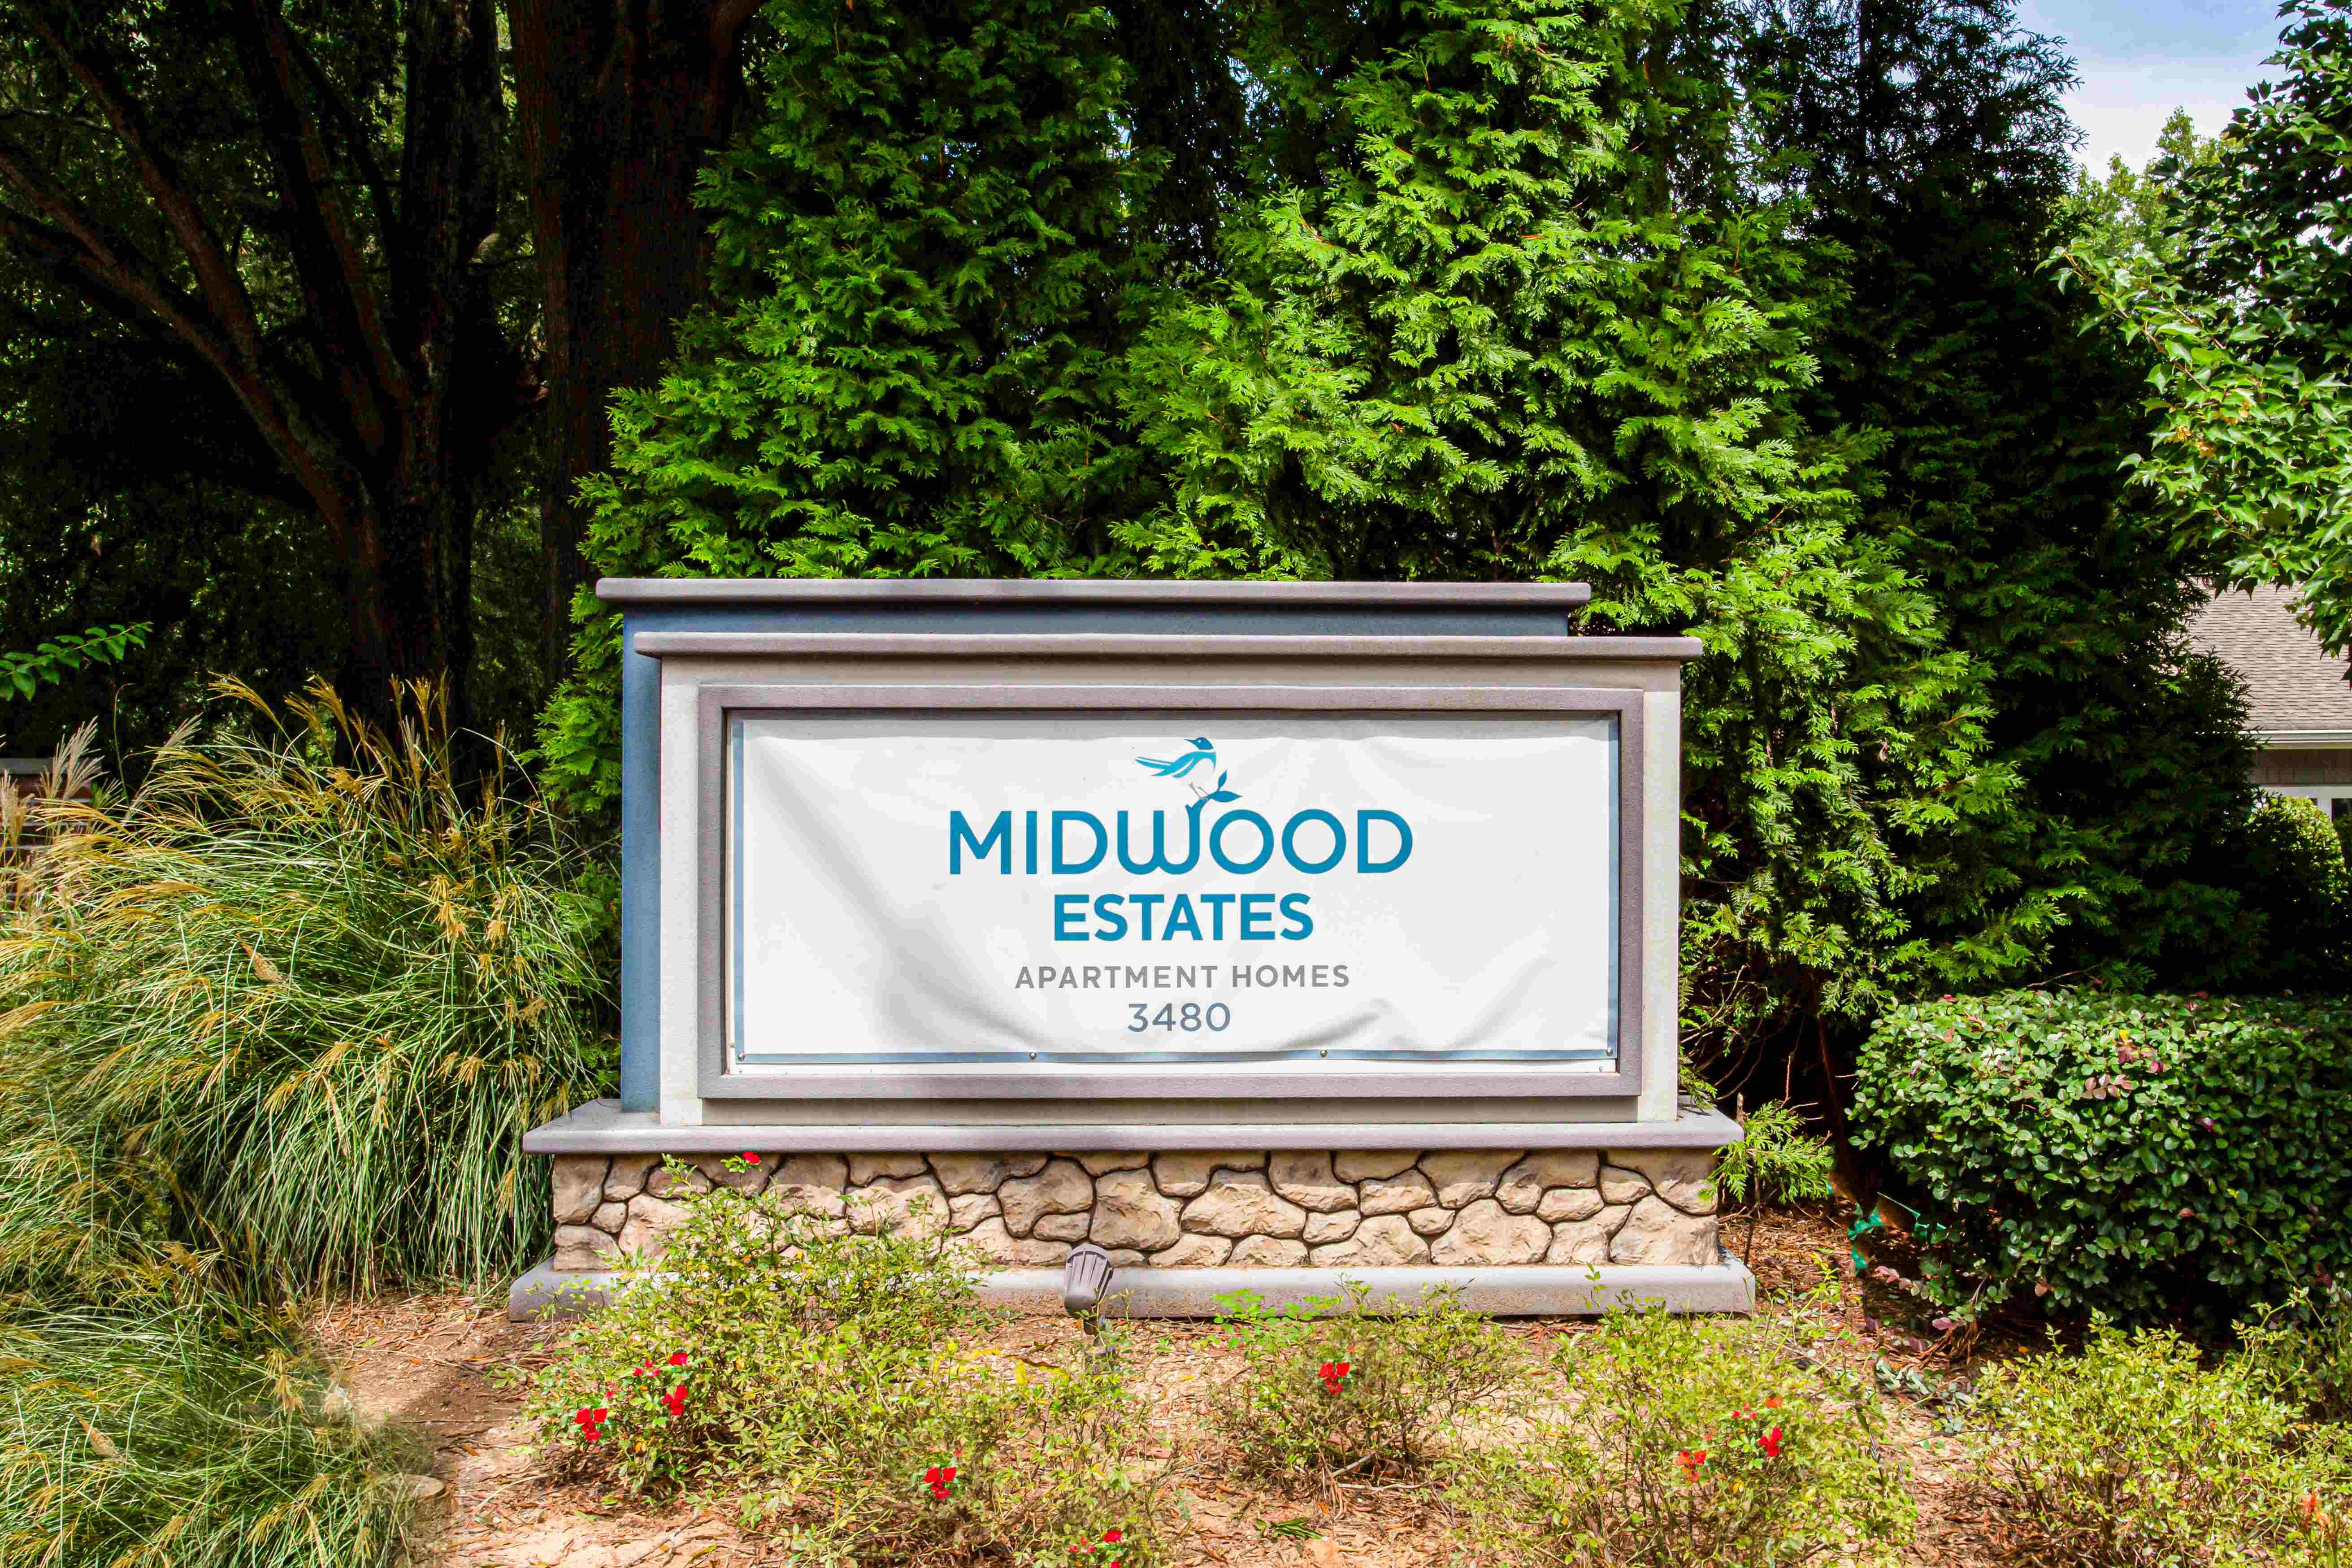 Midwood Estates Located in Doraville, GA exterior sign